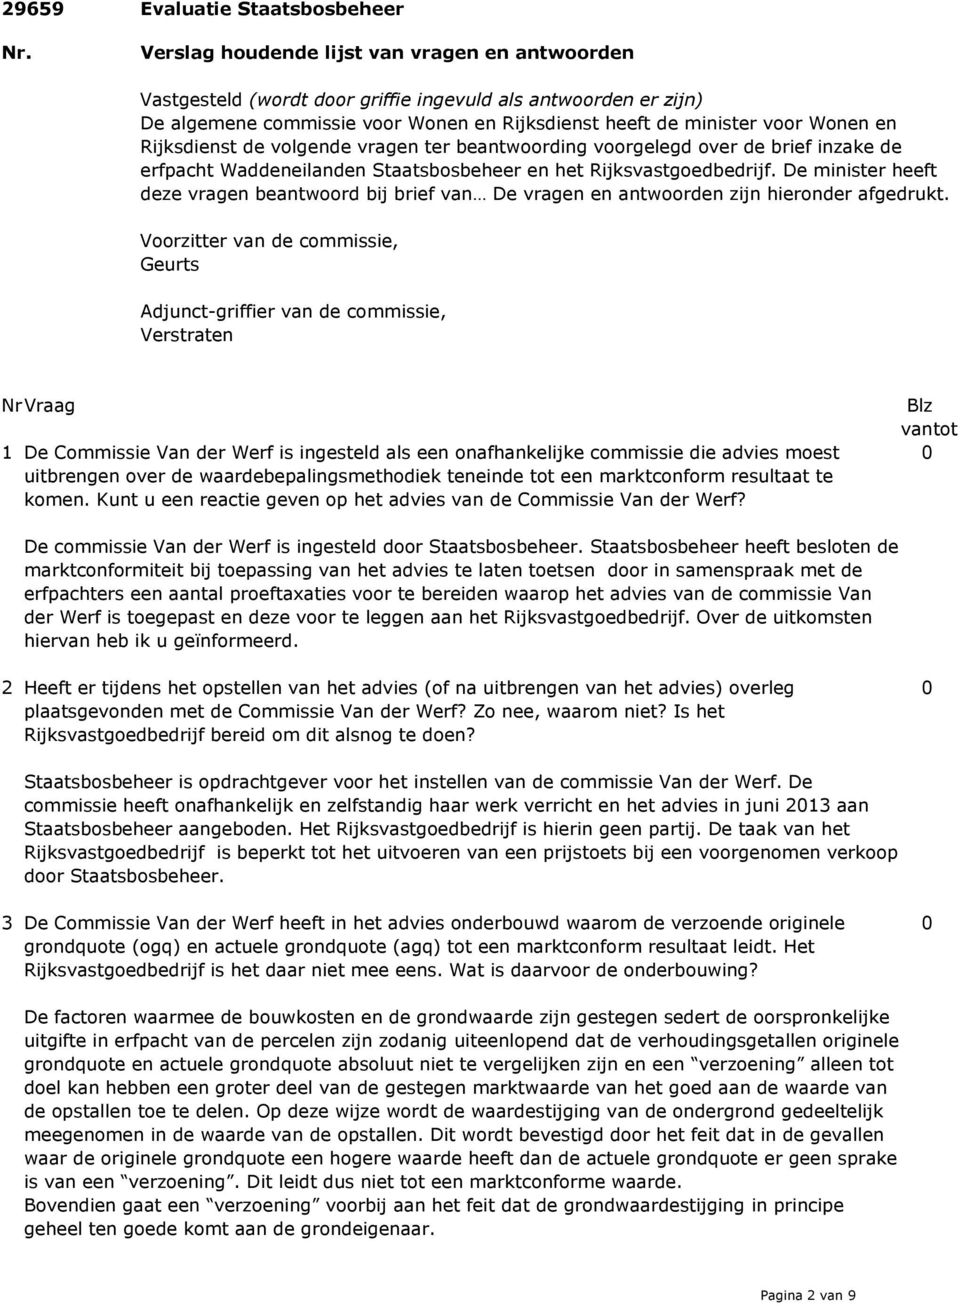 Rijksdienst de volgende vragen ter beantwoording voorgelegd over de brief inzake de erfpacht Waddeneilanden Staatsbosbeheer en het Rijksvastgoedbedrijf.